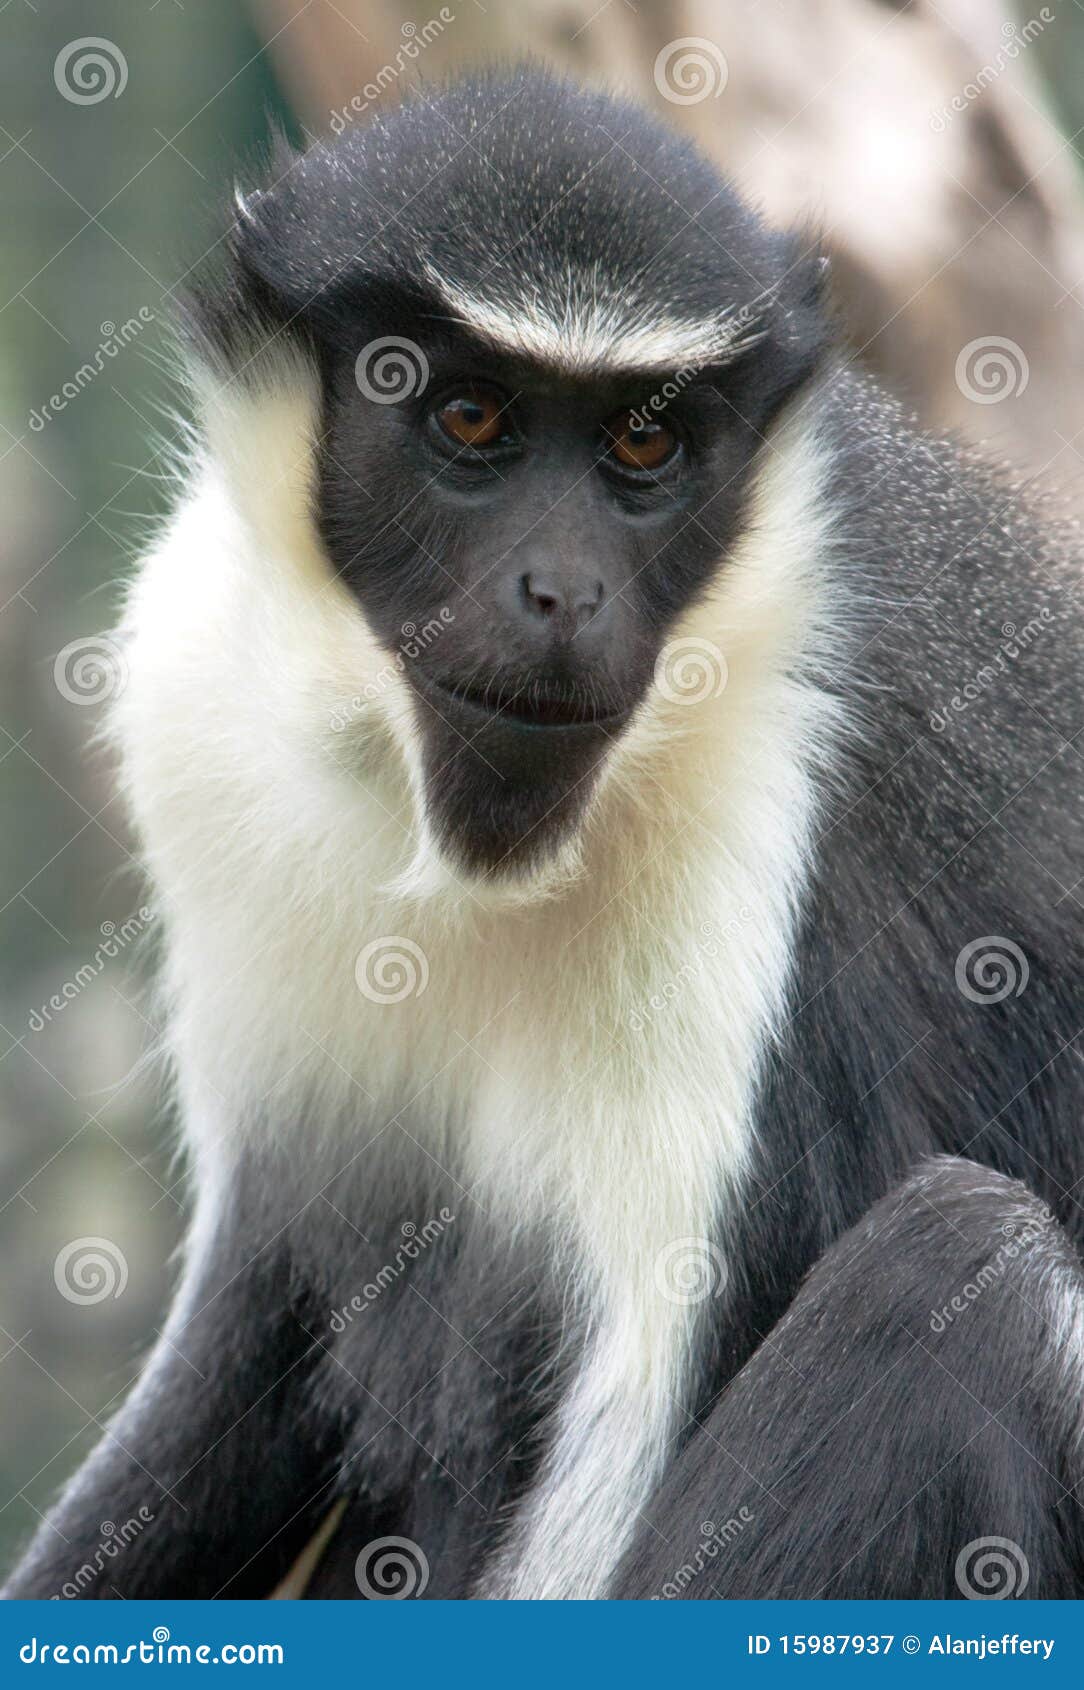 diana monkey portrait